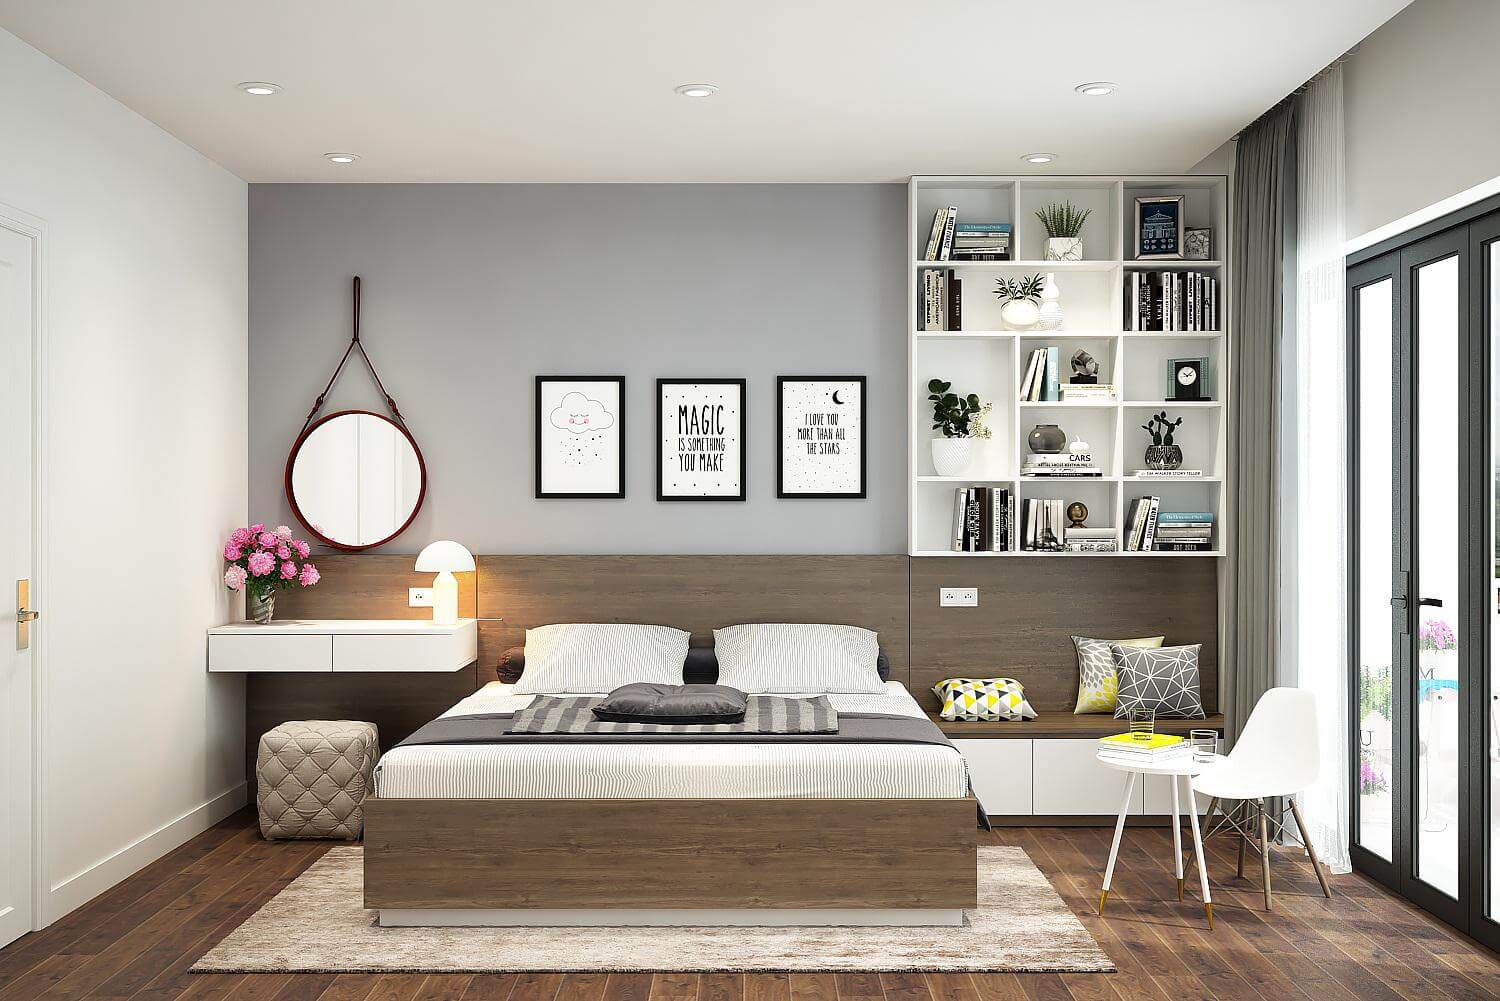 Các đồ nội thất phòng ngủ và cách sắp xếp trang trí nội thất theo xu hướng mới